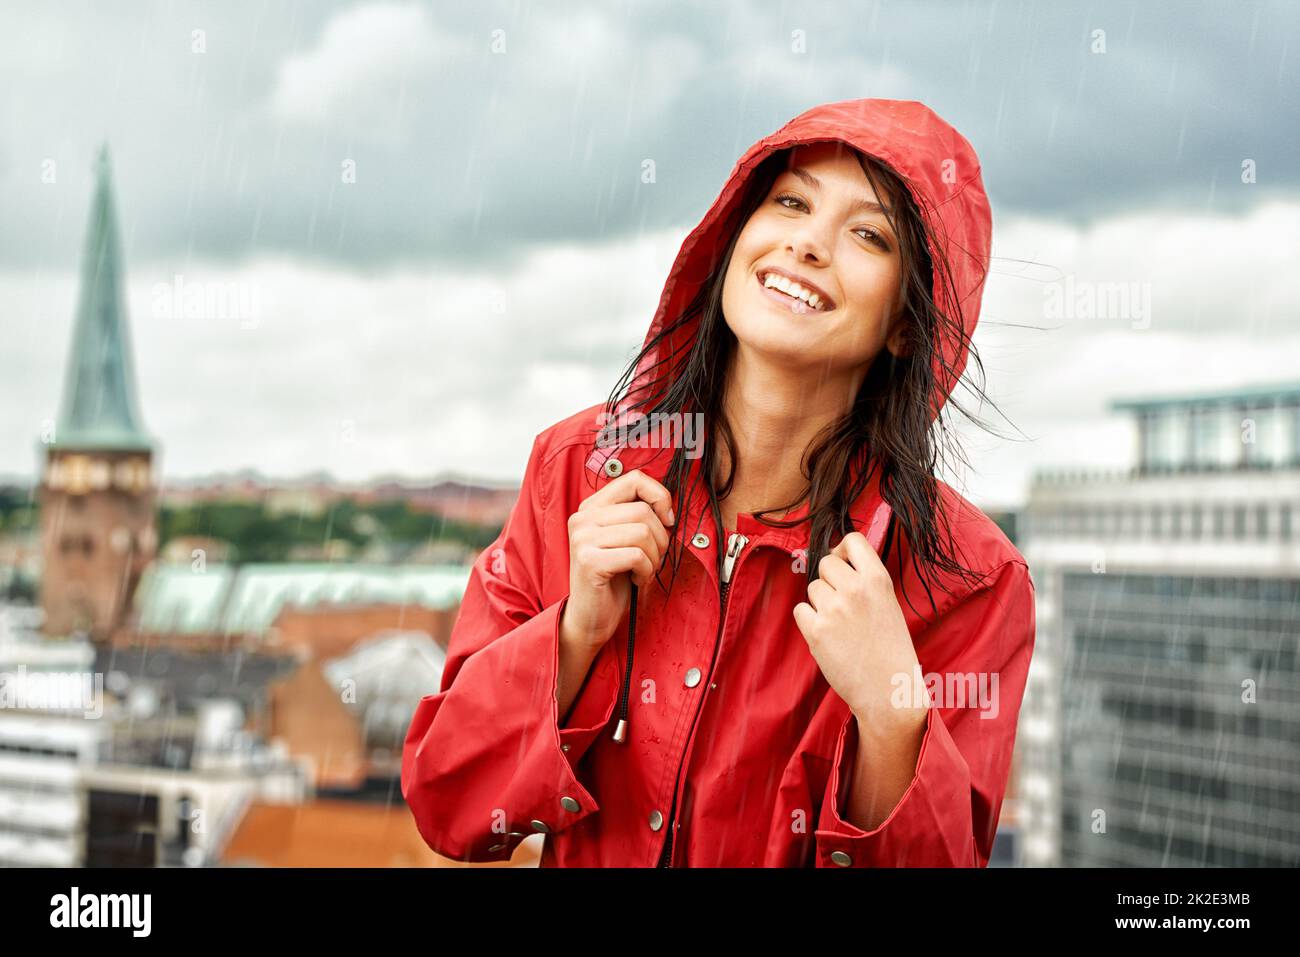 Ein regnerischer Tag kann sie nicht zum Boden bringen. Hübsche junge Frau, die lächelt, während sie einen roten Regenmantel trägt - Porträt. Stockfoto